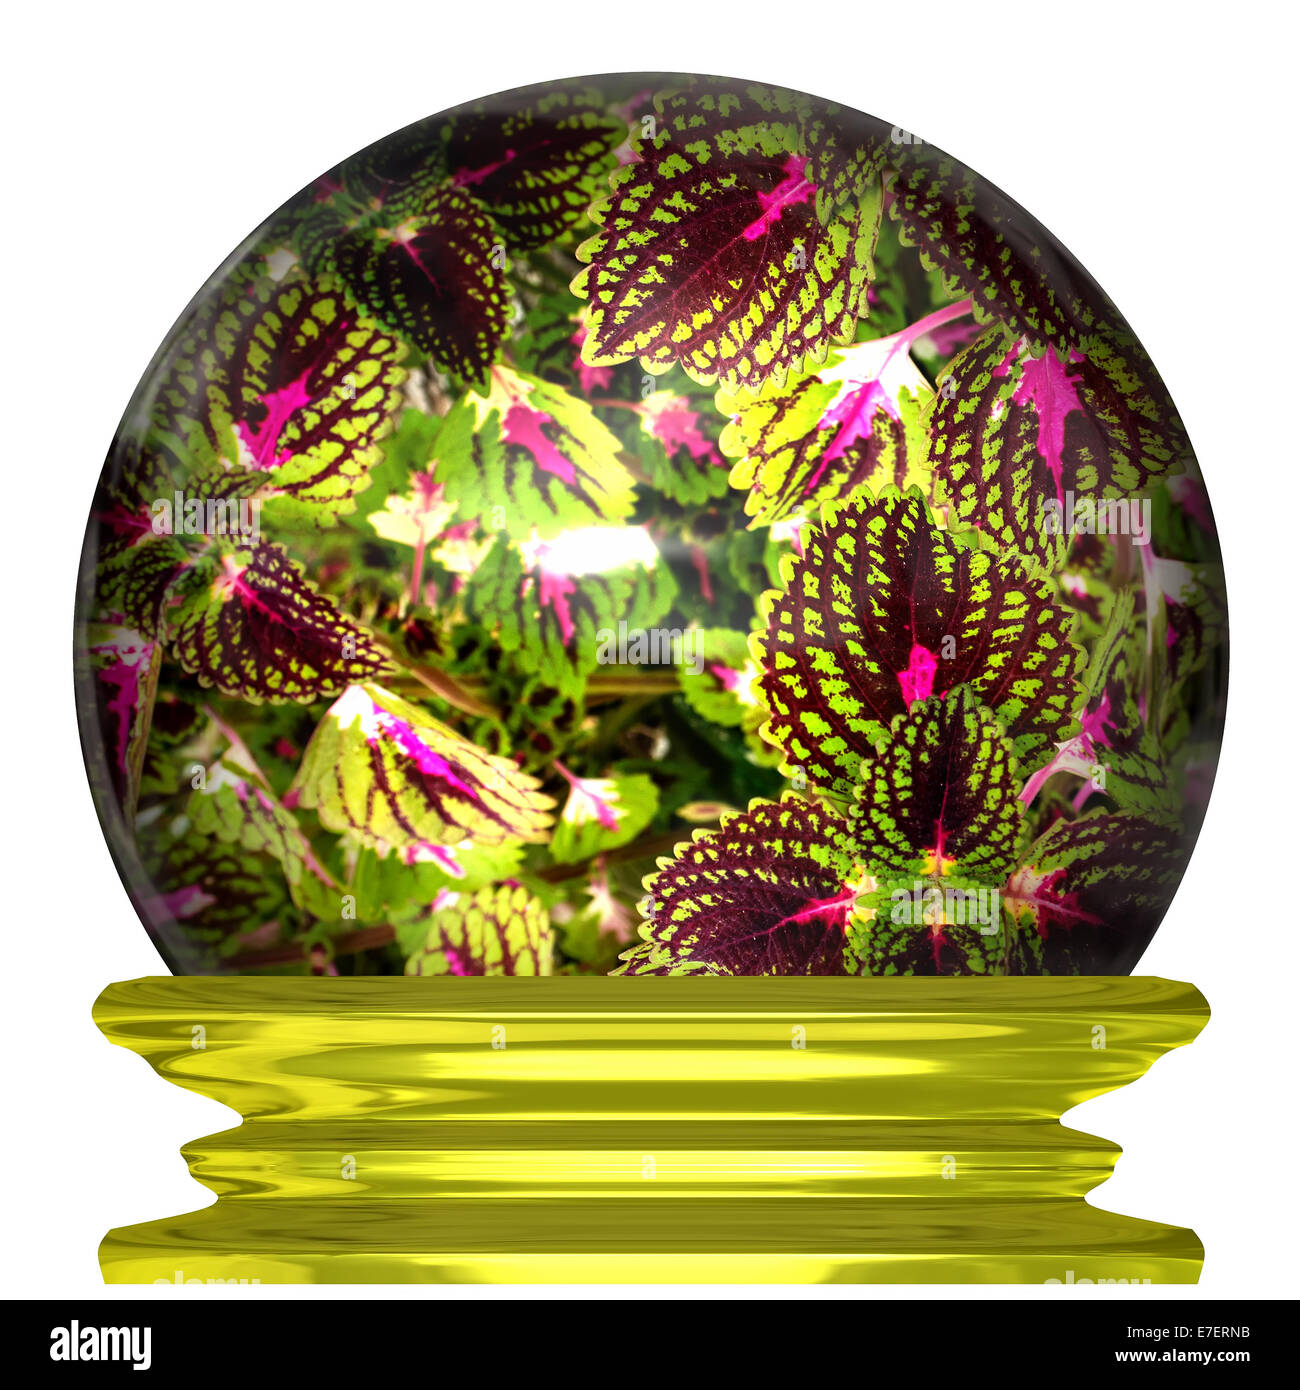 Images de fleurs avec des couleurs vives dans une boule de cristal Banque D'Images